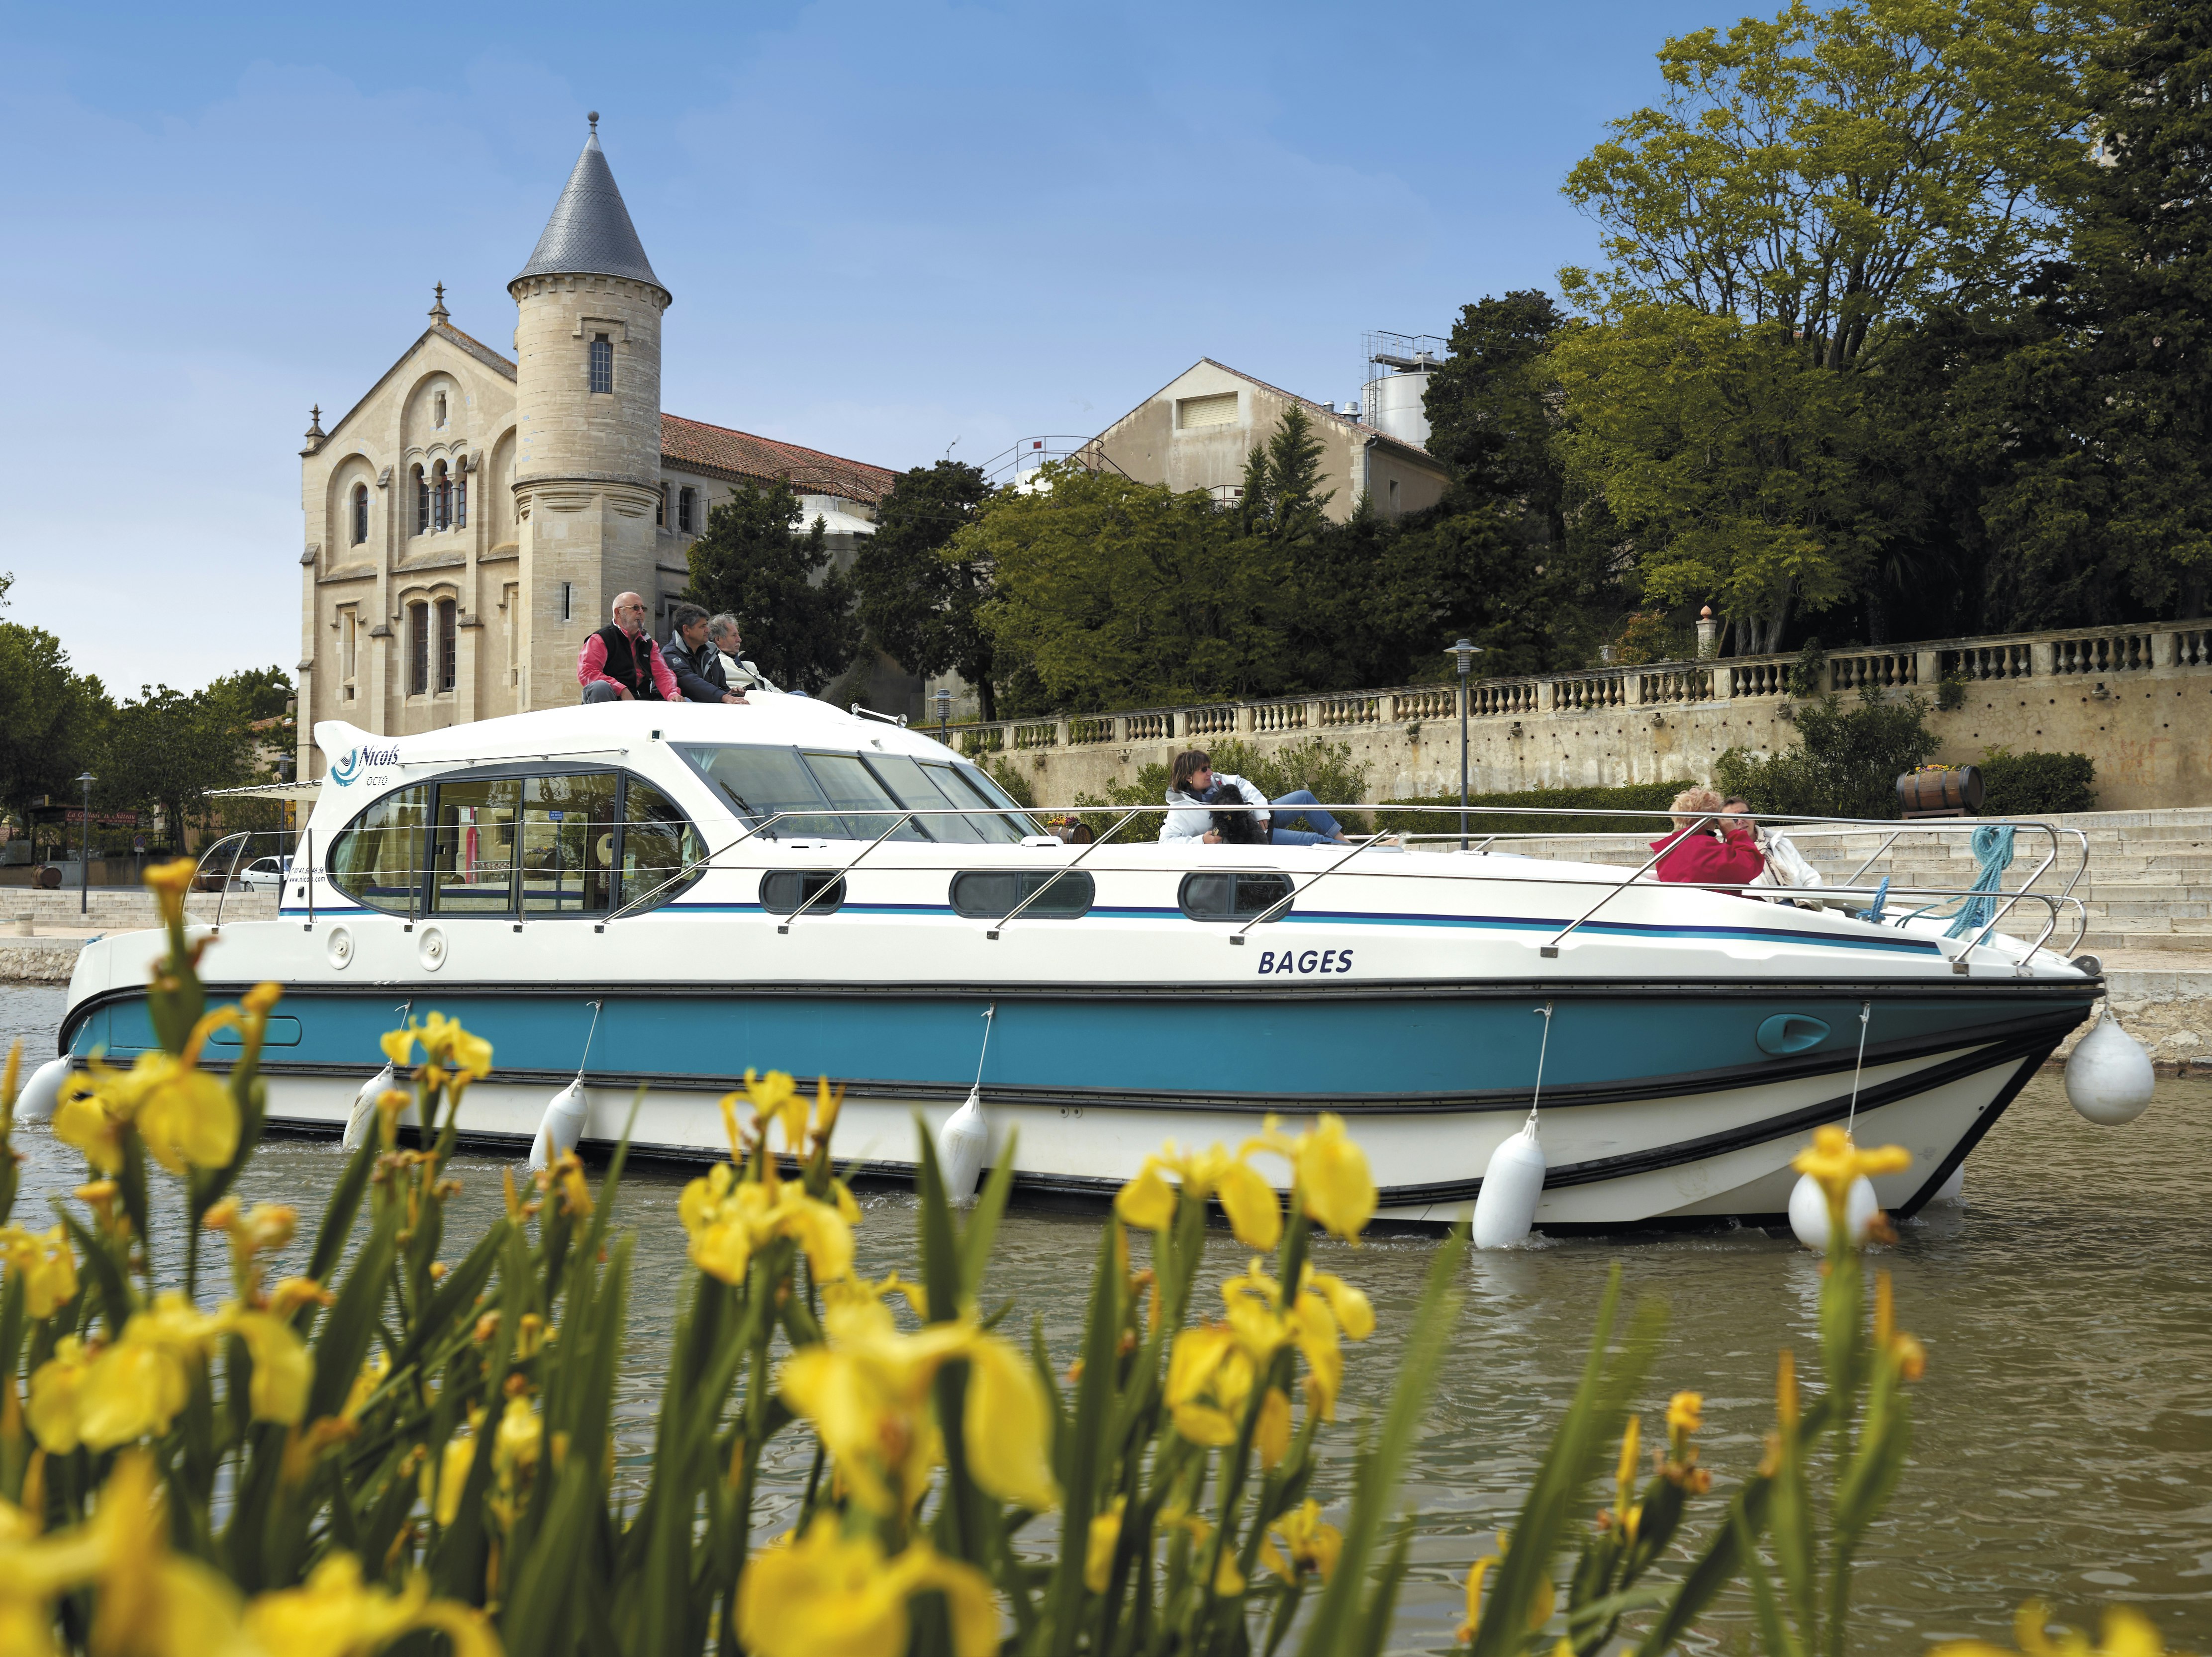 Una casa galleggiante naviga davanti a un castello storico in Francia.